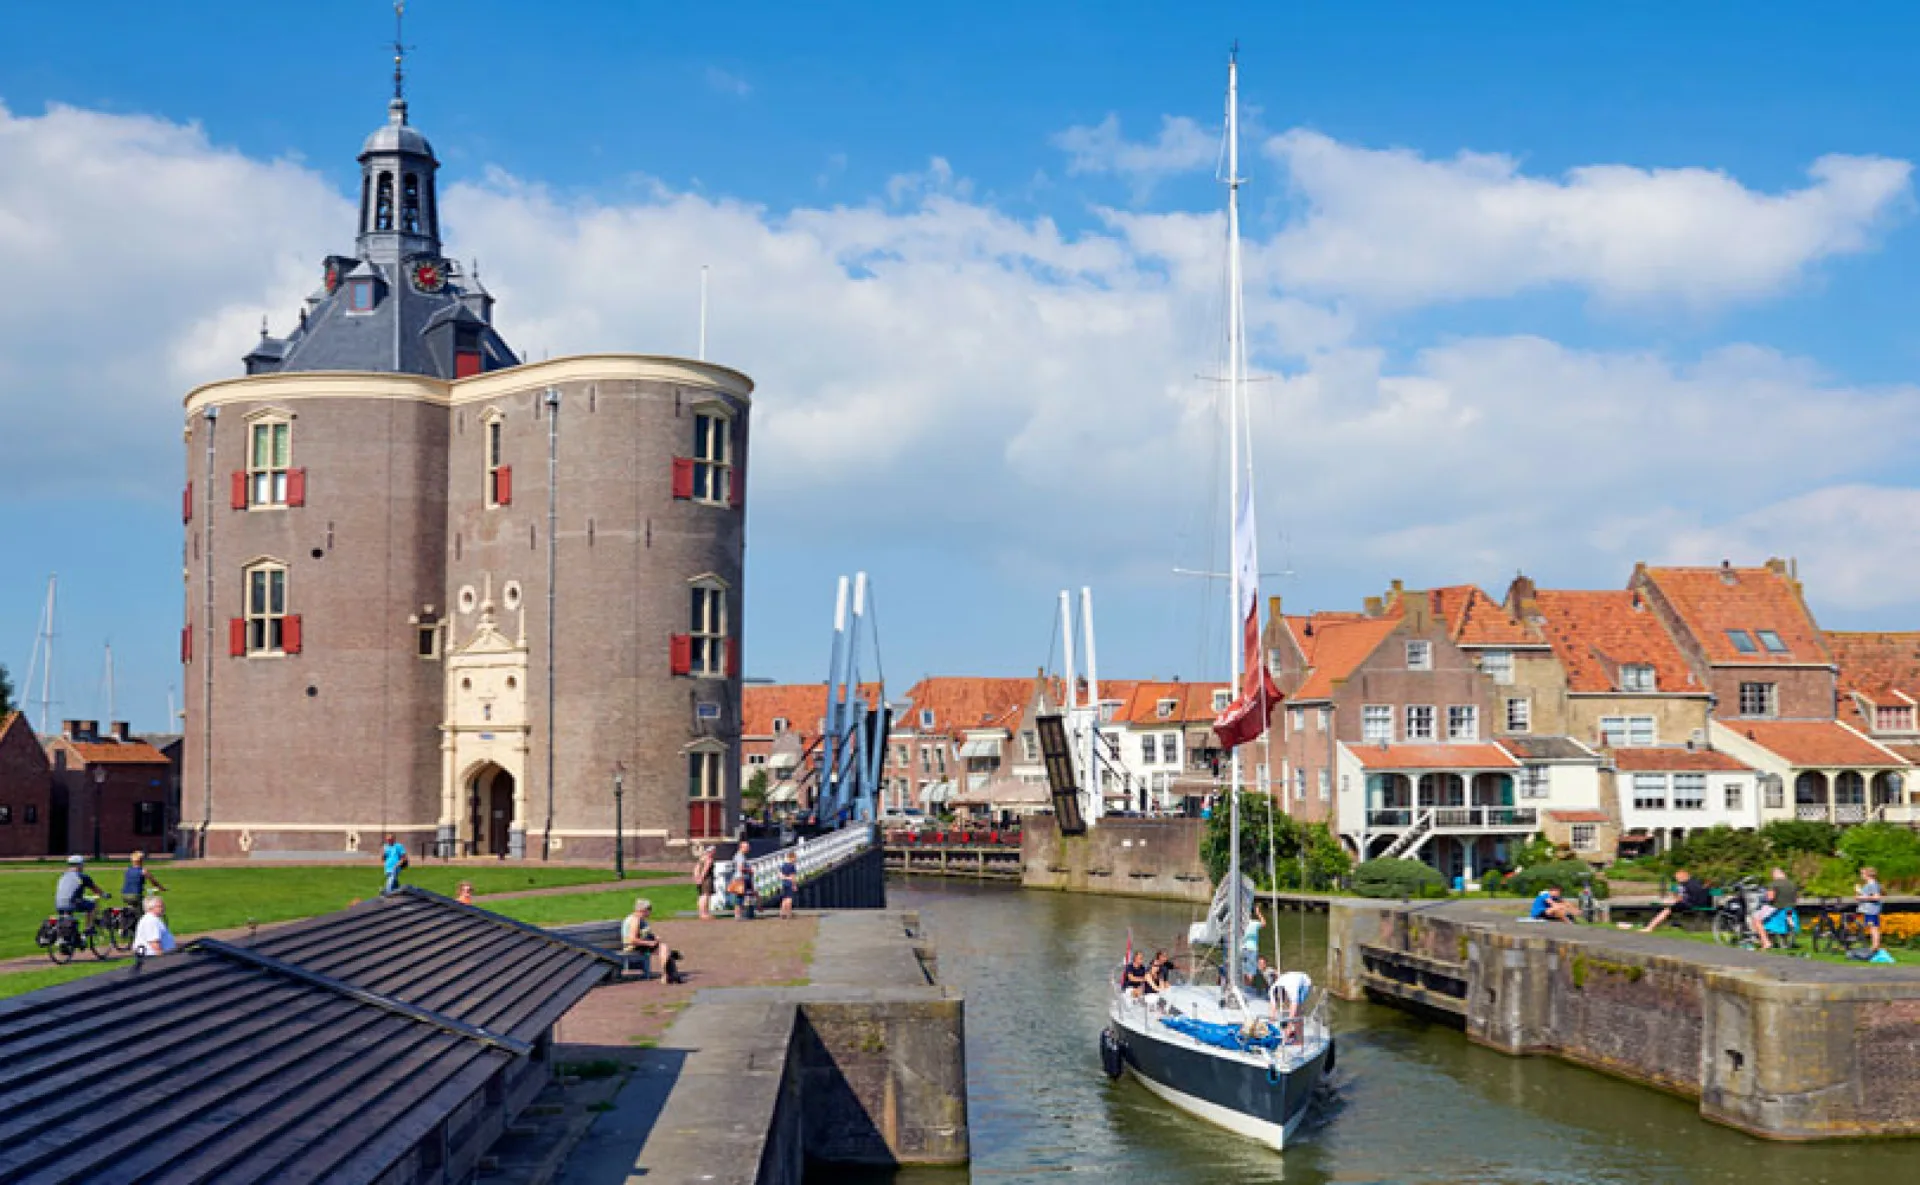 Το μουσείο Zuiderzee στο Enkhuizen της Ολλανδίας - Πύργος Dromedaris